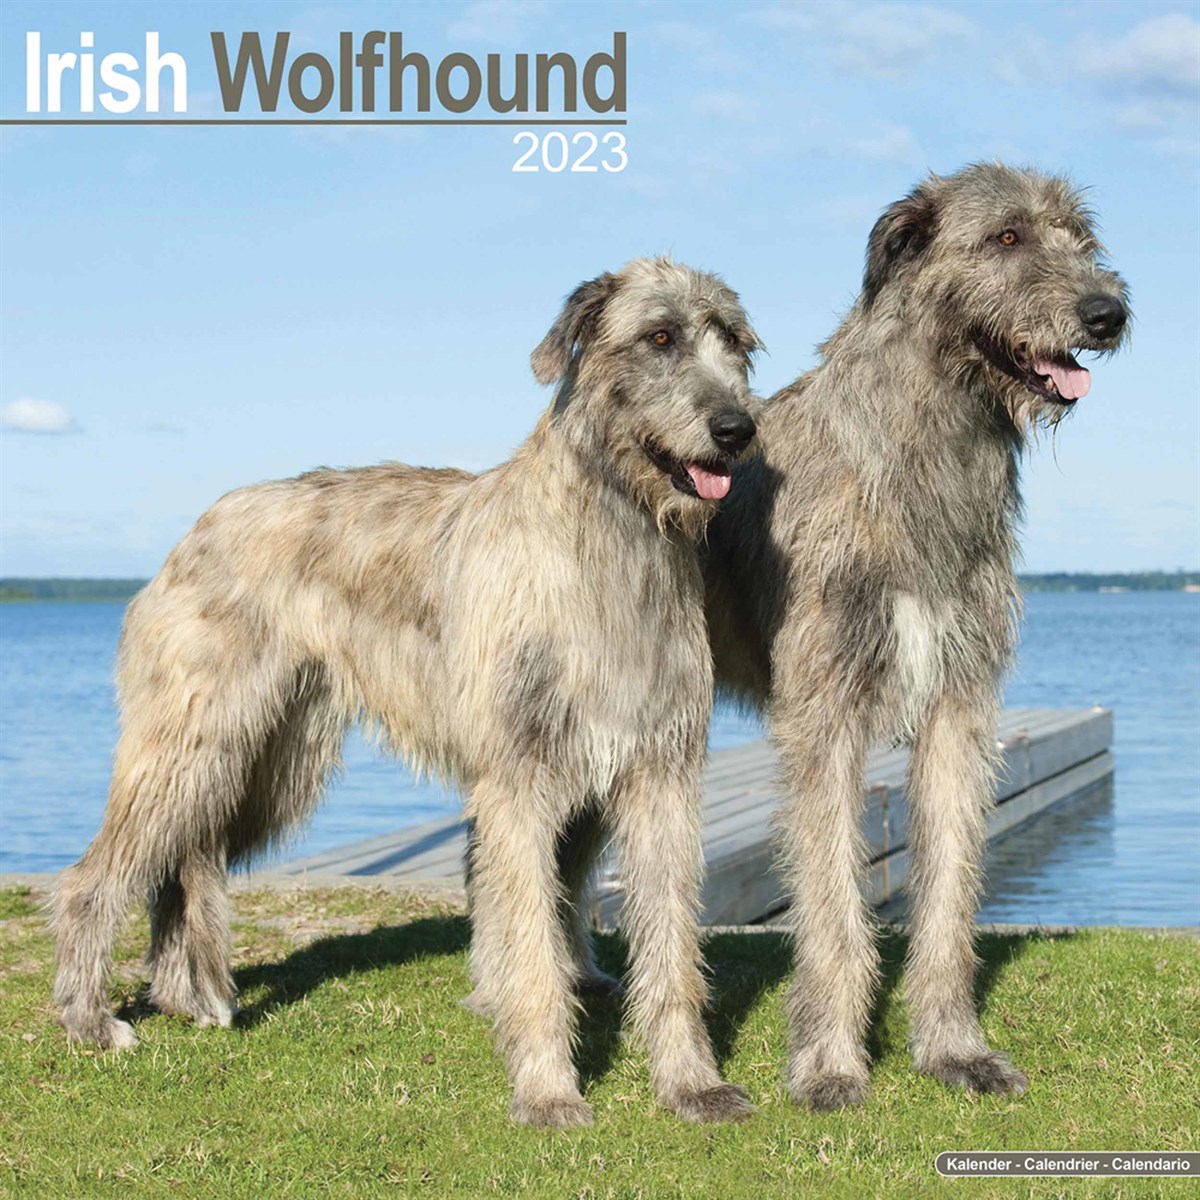 Irish Wolfhound 2023 Calendars